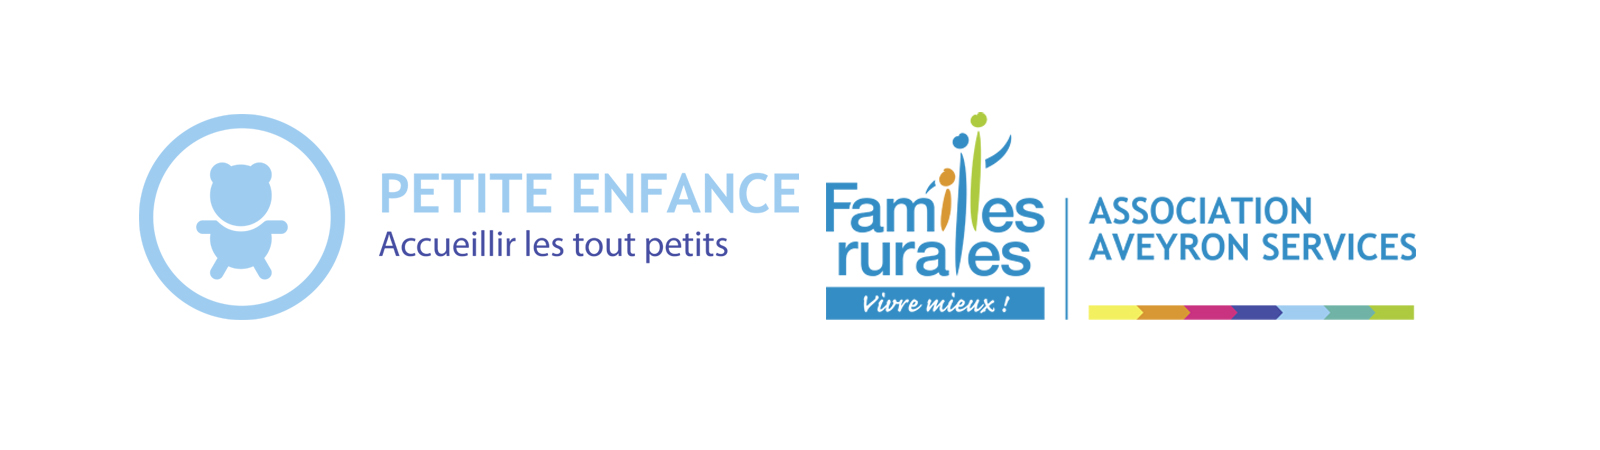 Petite Enfance Familles Rurales Aveyron Services 